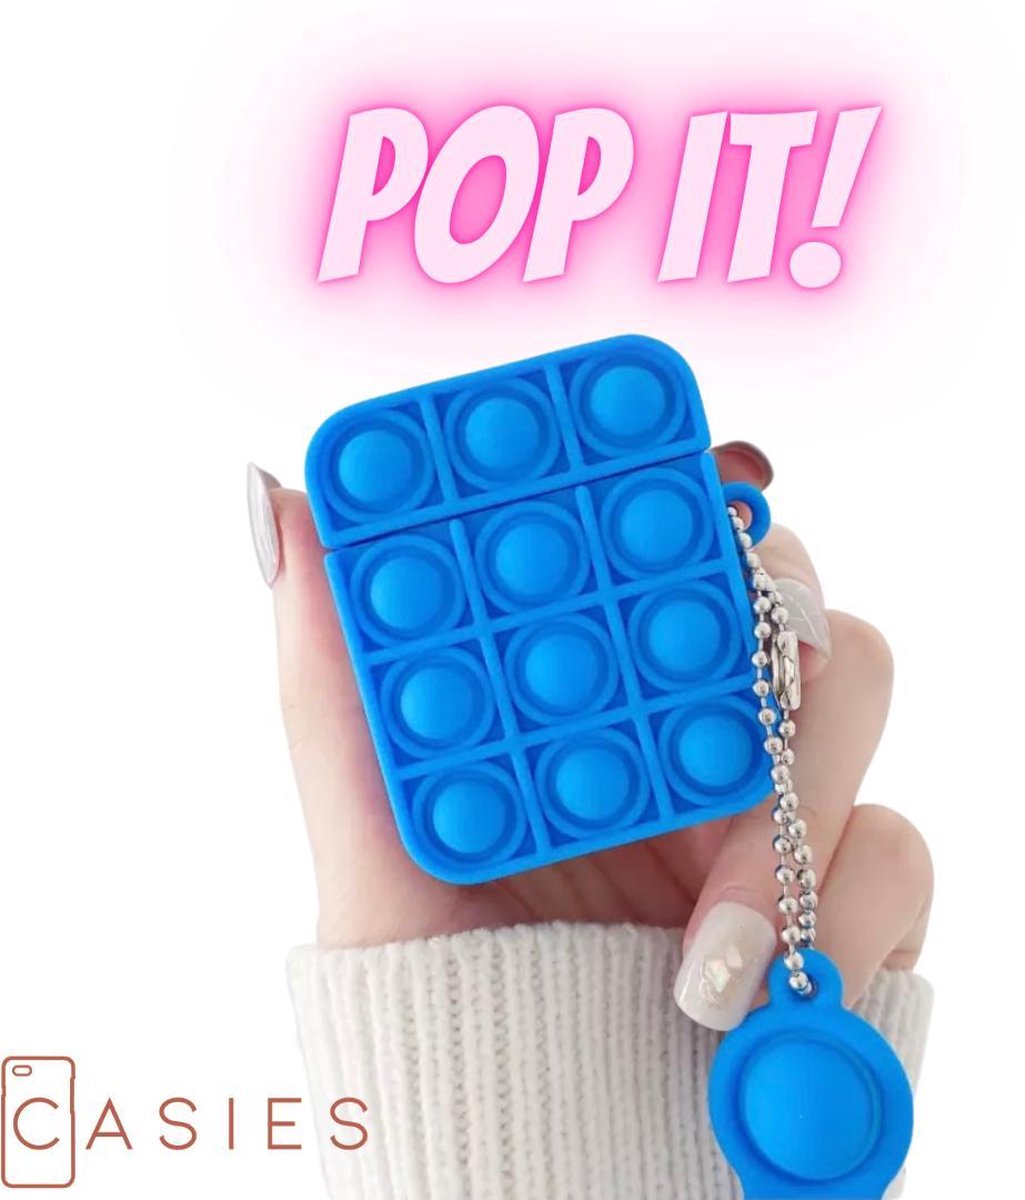 Casies Apple AirPods 1 & 2 Pop It Fidget Toy hoesje - Blauw - Gezien op TikTok - Soft case hoesje - Fidget Toys